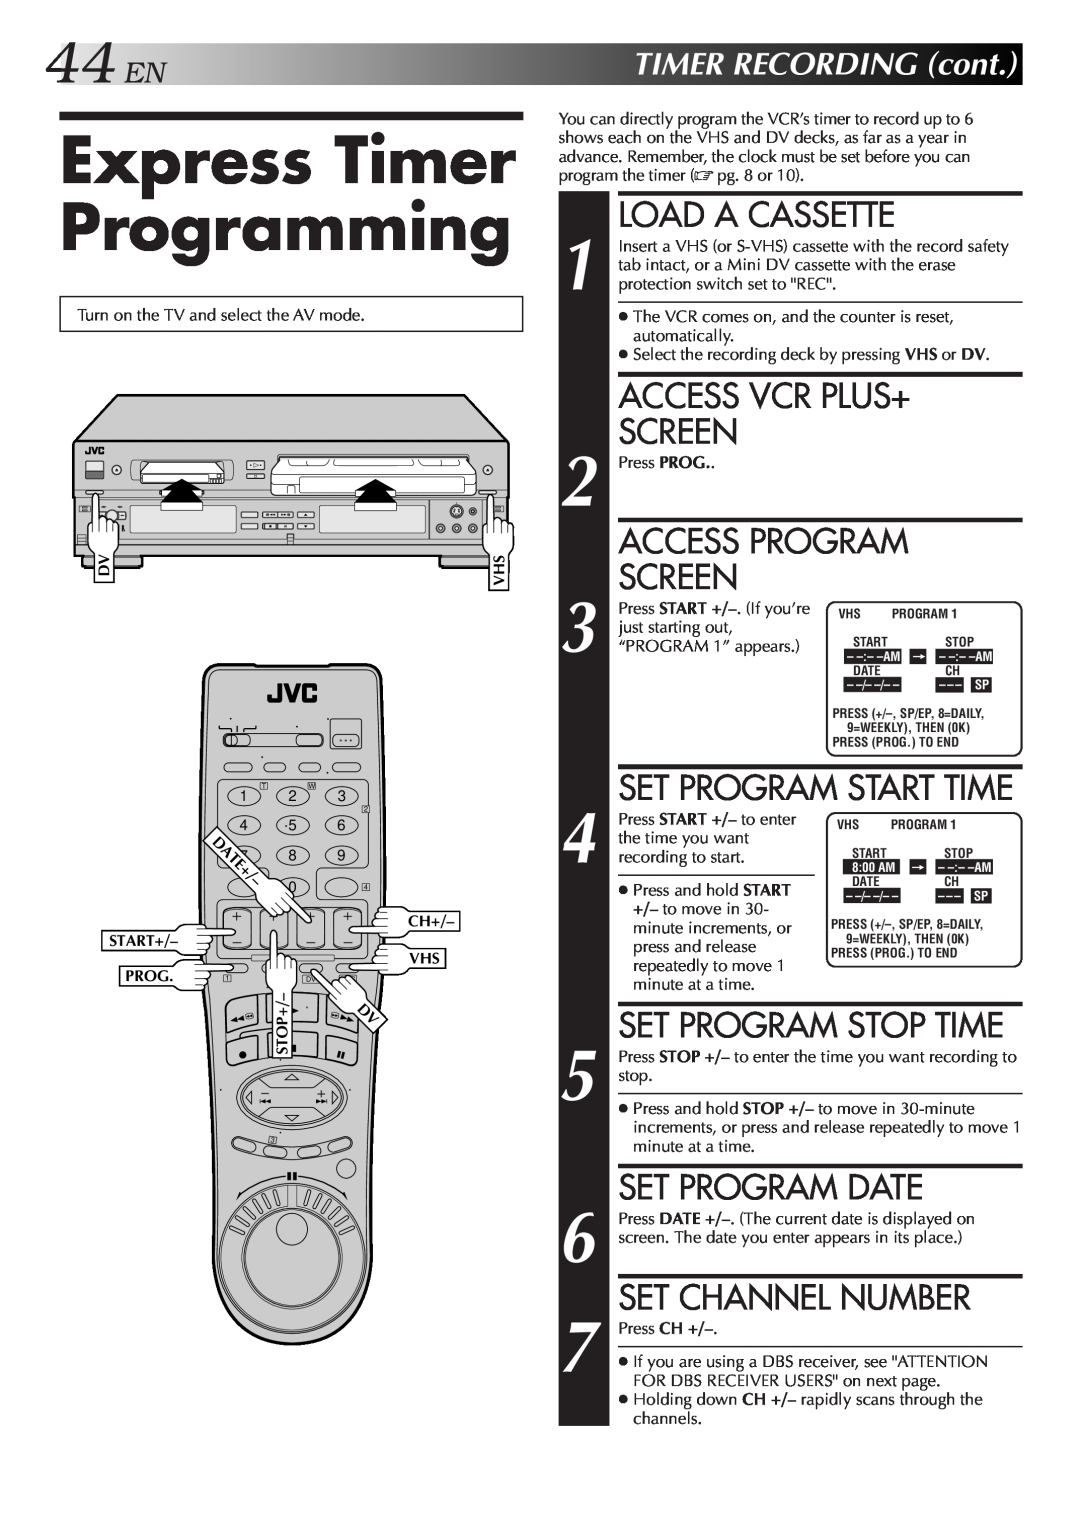 JVC Model HR-DVS1U manual Express Timer Programming, Set Program Date, Set Channel Number, 44ENTIMERRECORDINGcont, Screen 